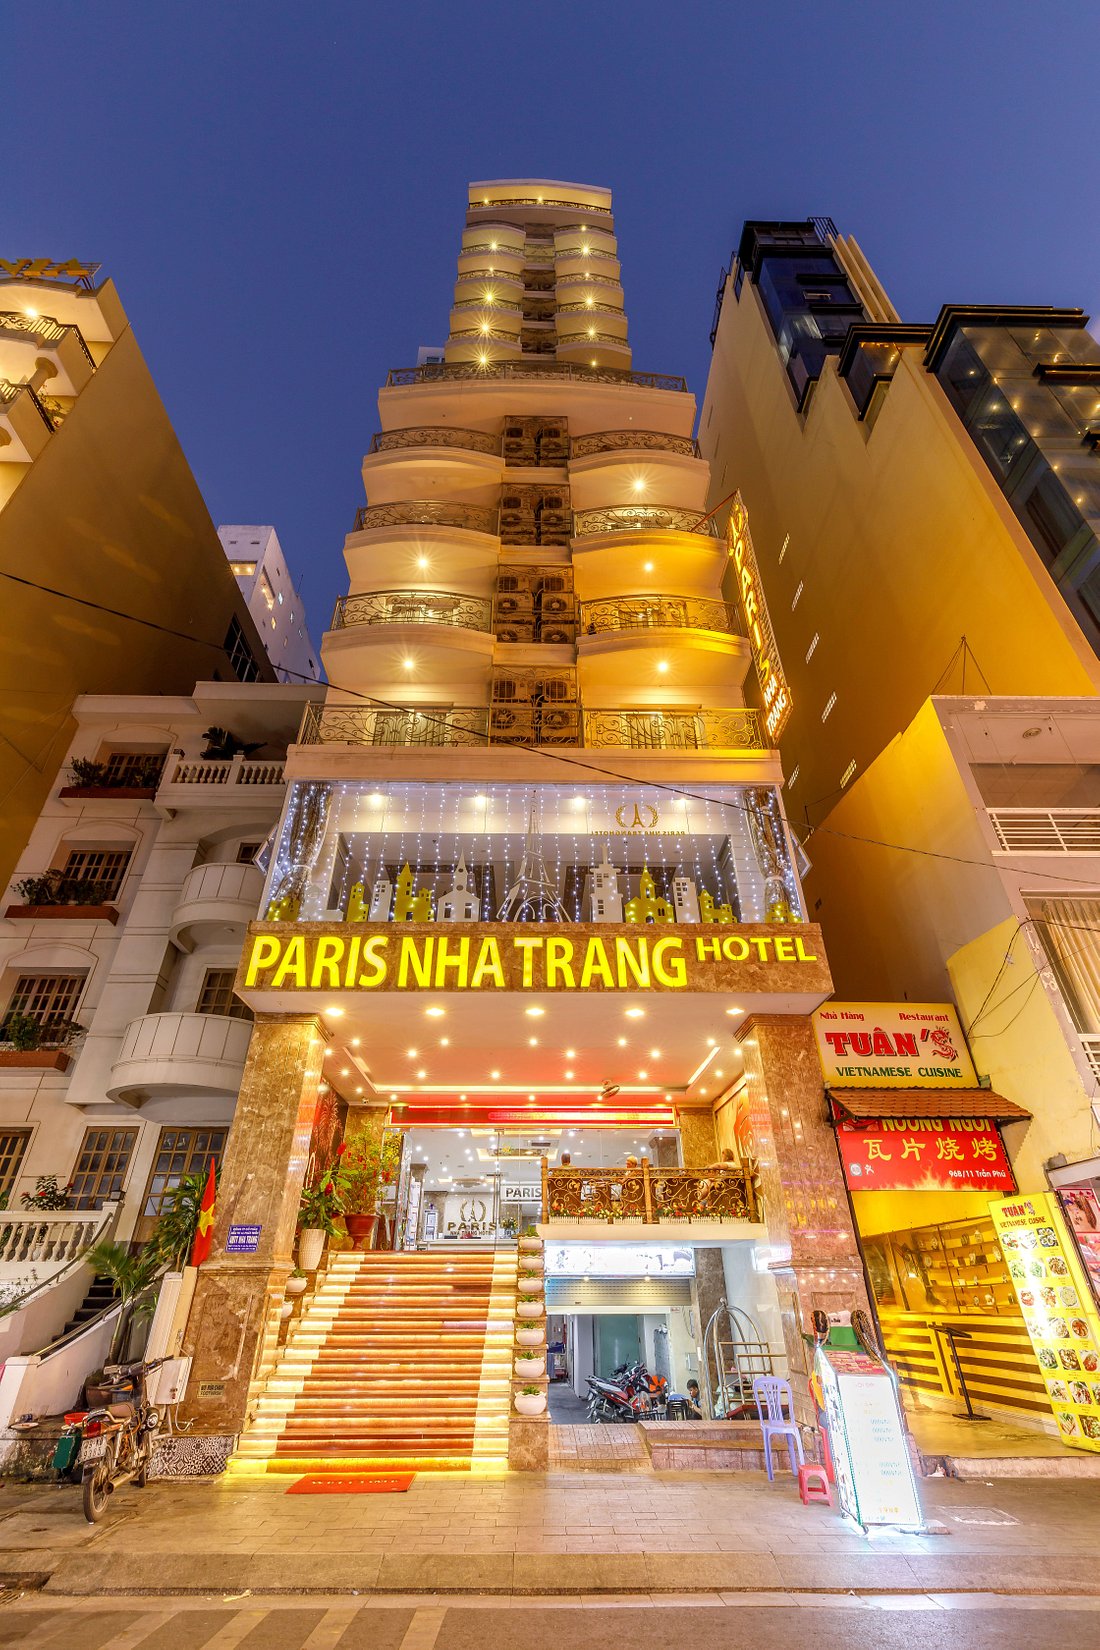 Paris Nha Trang Hotel Đưa Bạn Về Chốn Thanh Bình An Nhiên